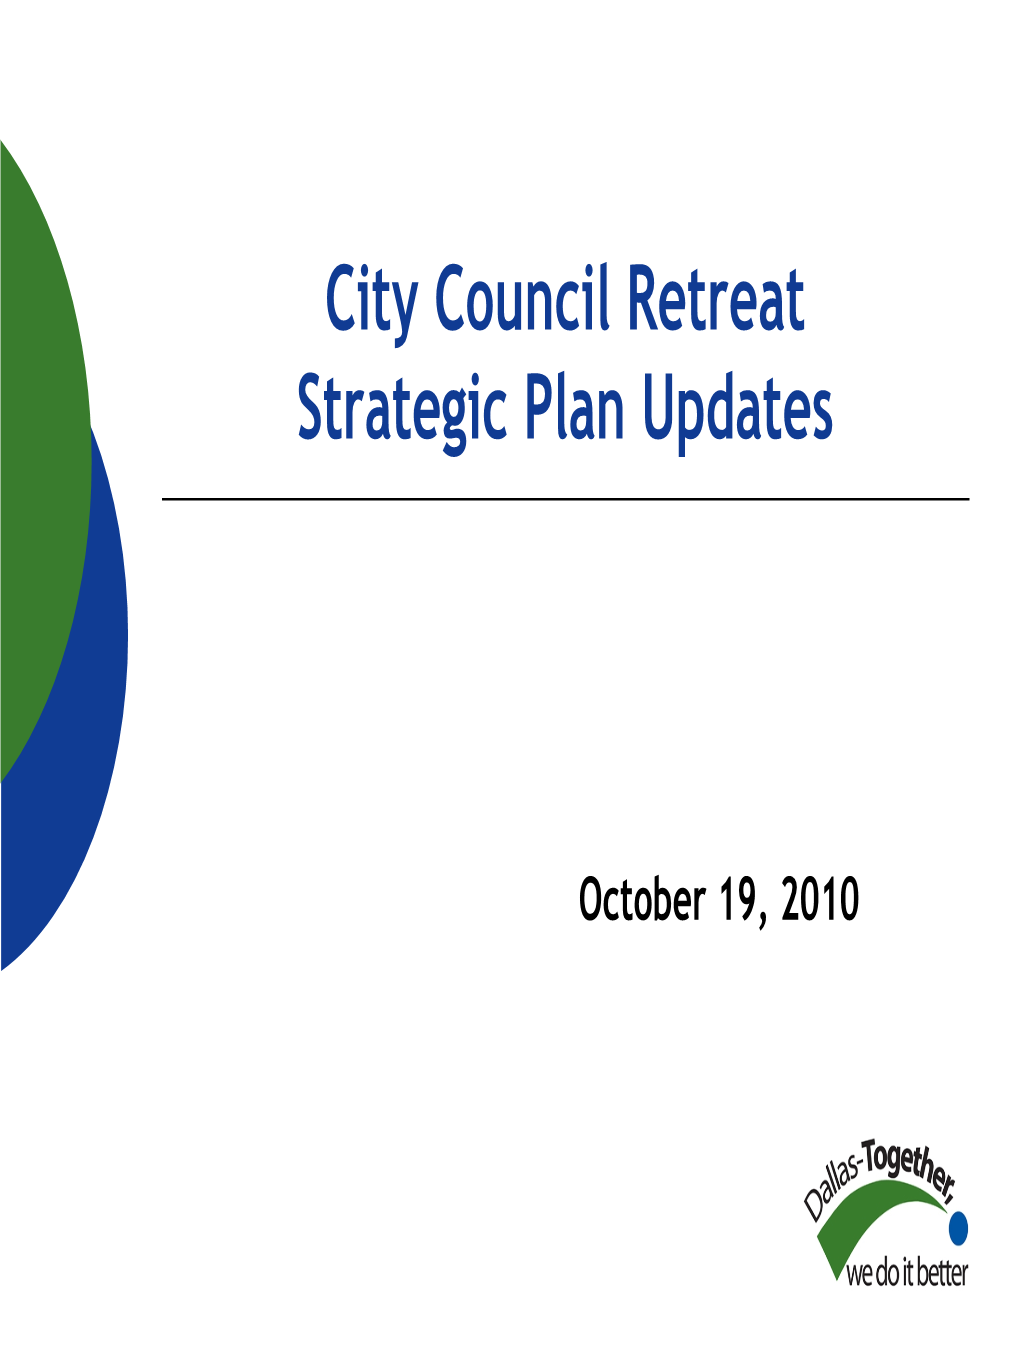 City of Dallas Strategic Plan Briefing